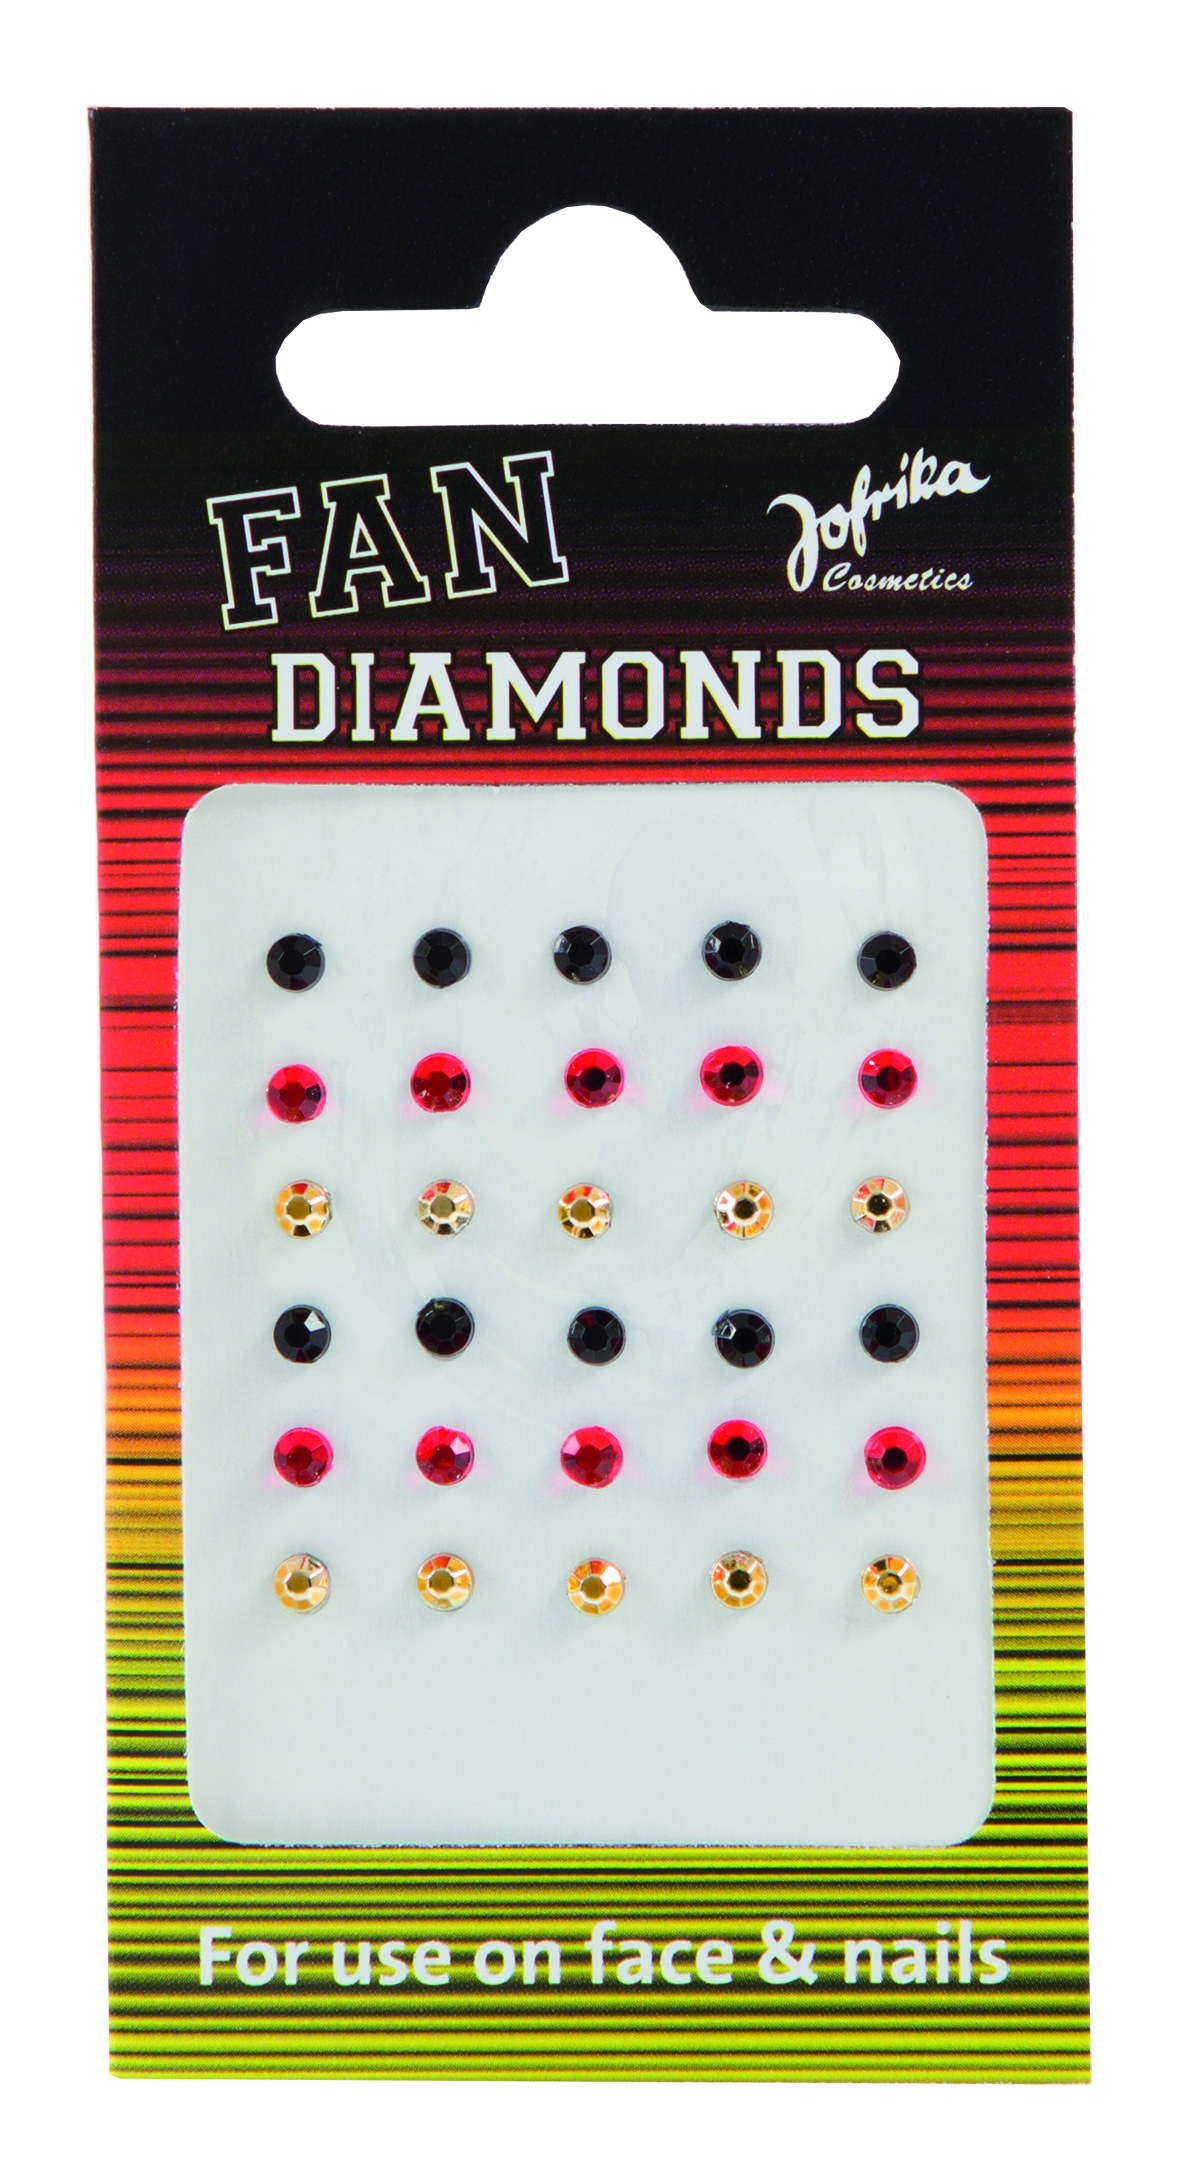 Jofrika Cosmetics 716860 - Fan Diamonds, Schwarz Rot Gold WM EM